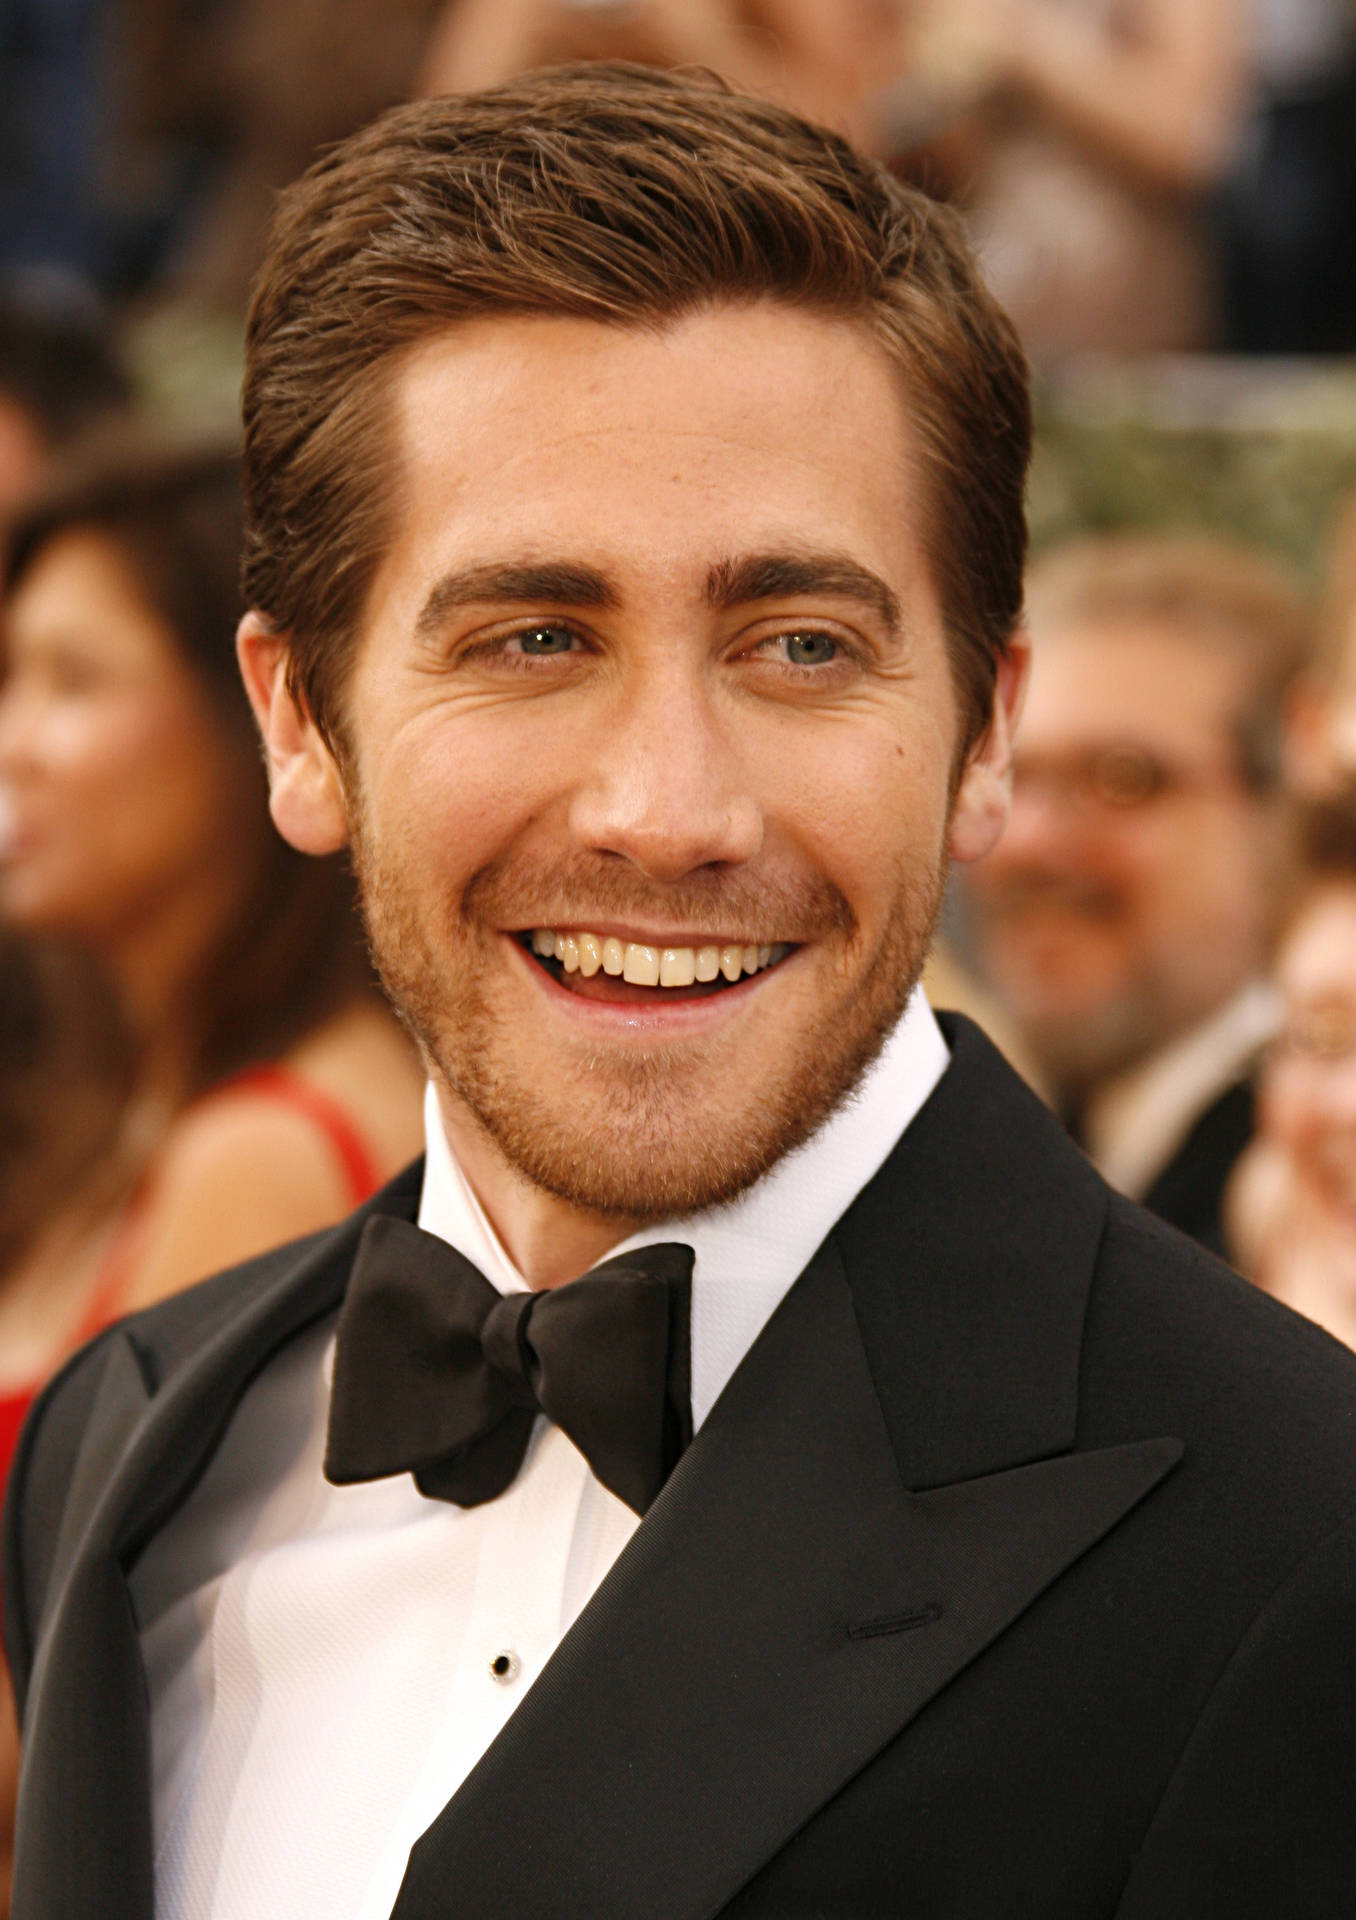 Jake Gyllenhaal Dashing Smile Wallpaper